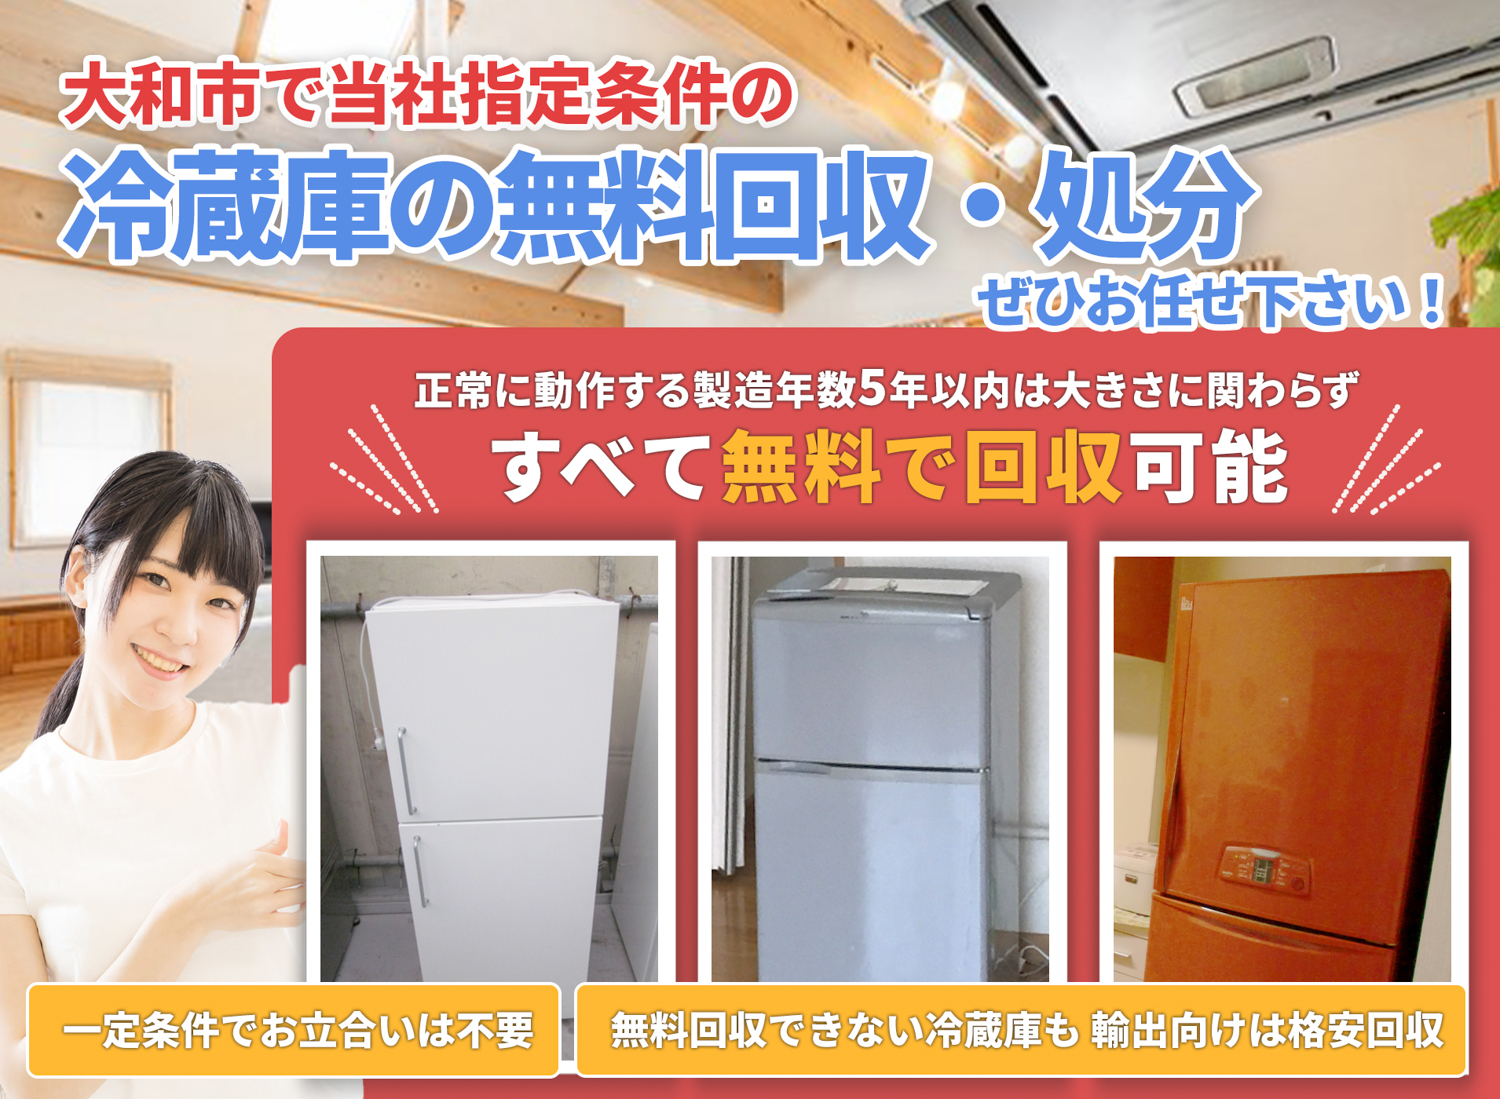 大和市のサービスで地域一番を目指す冷蔵庫無料回収処分隊の冷蔵庫無料回収サービス